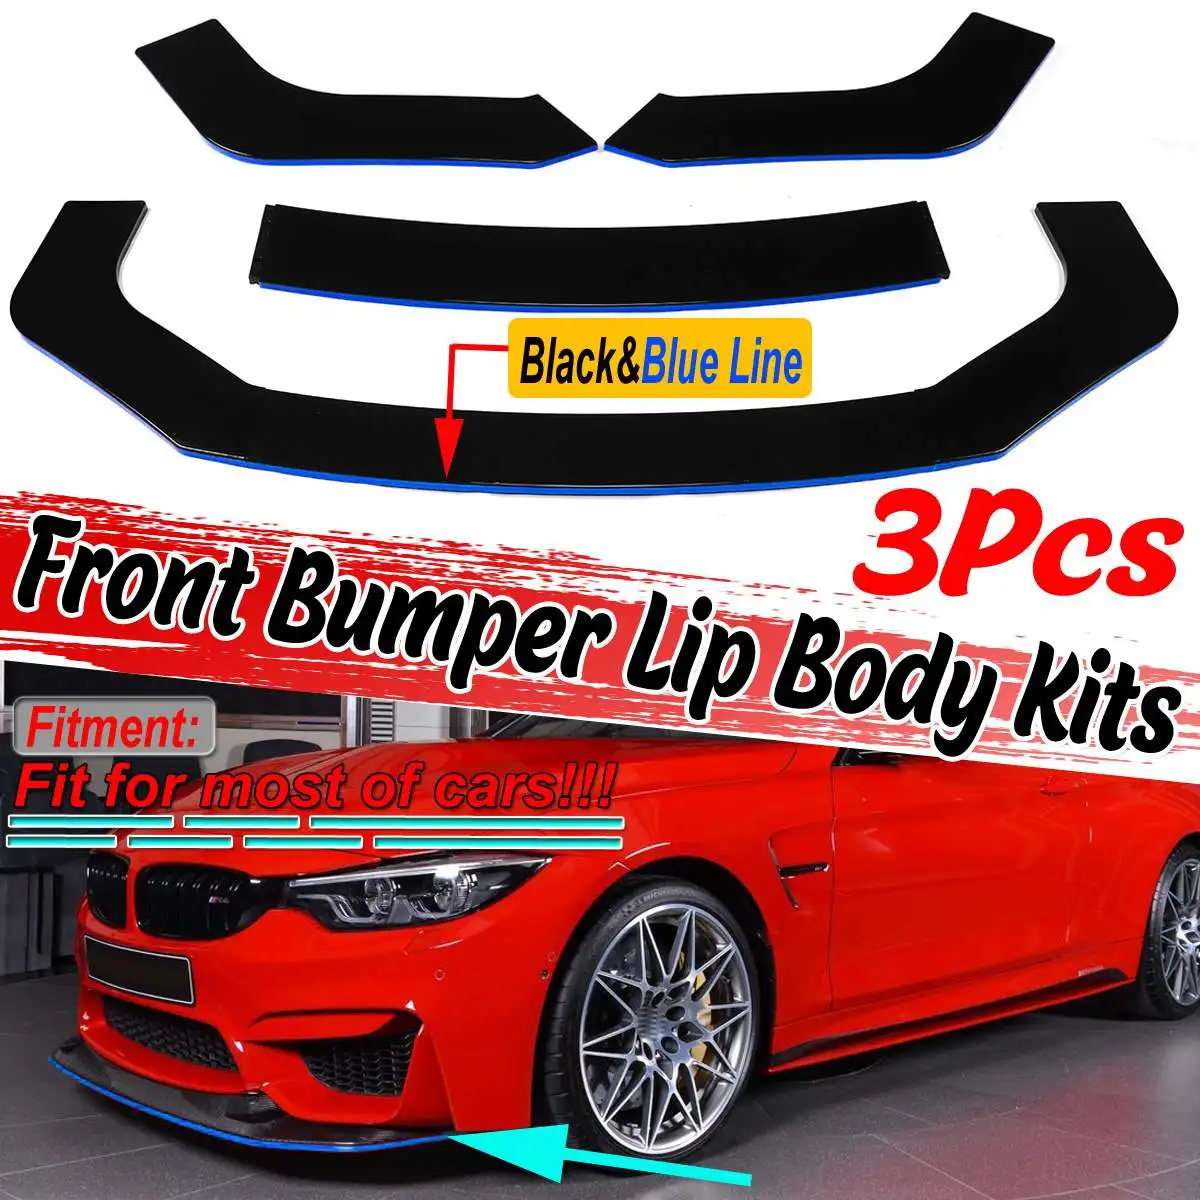 

3Pcs Universal Car Front Bumper Splitter Lip Diffuser Spoiler Protector For BMW F10/F11 E39 E46 E90 E92 E93 E60 F32 F36 G30 G31